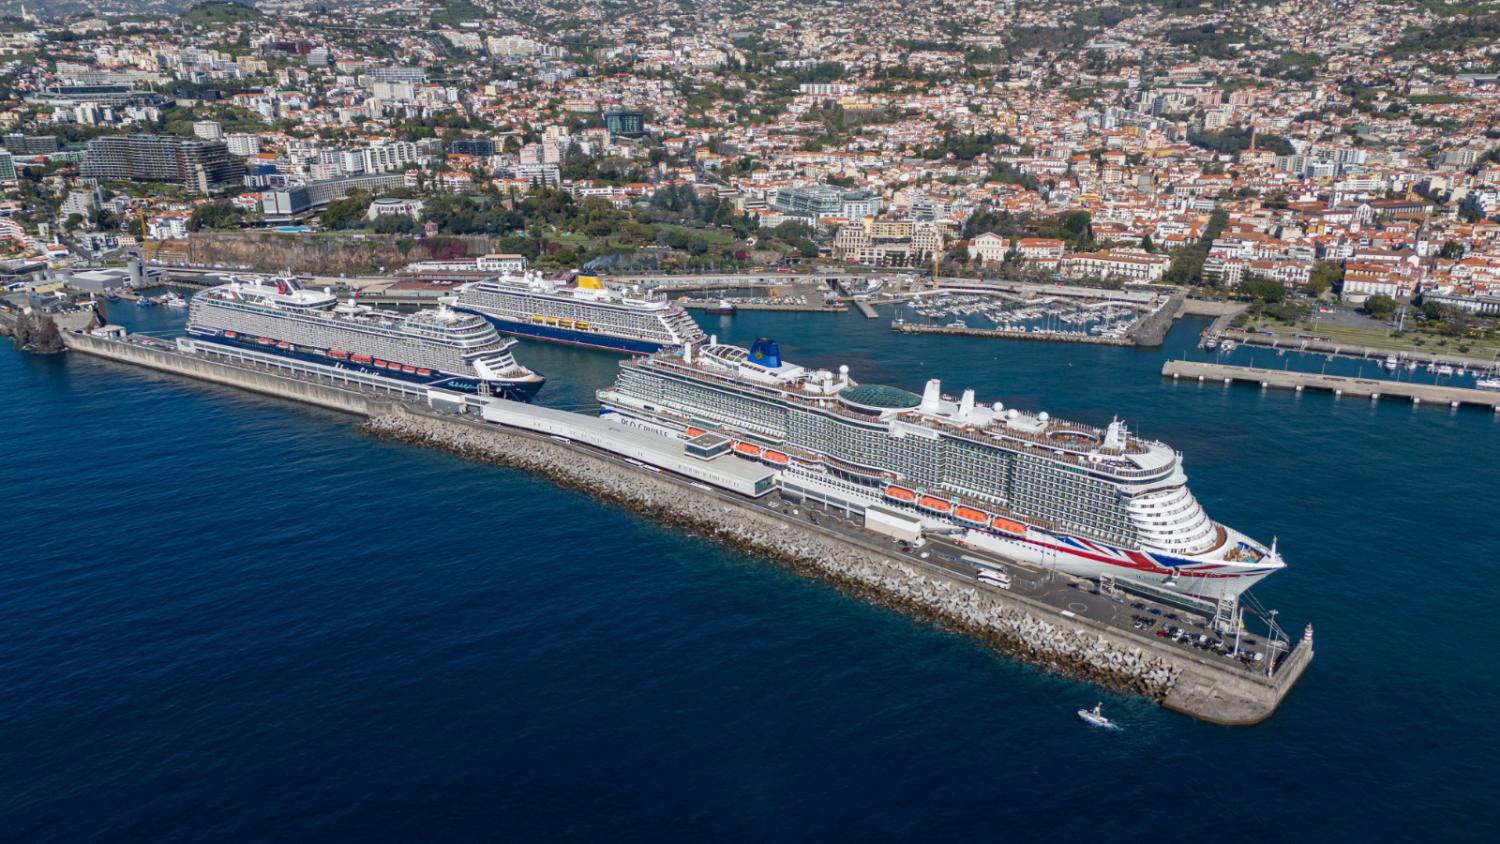 Porto do Funchal adornado com três navios (com fotos)